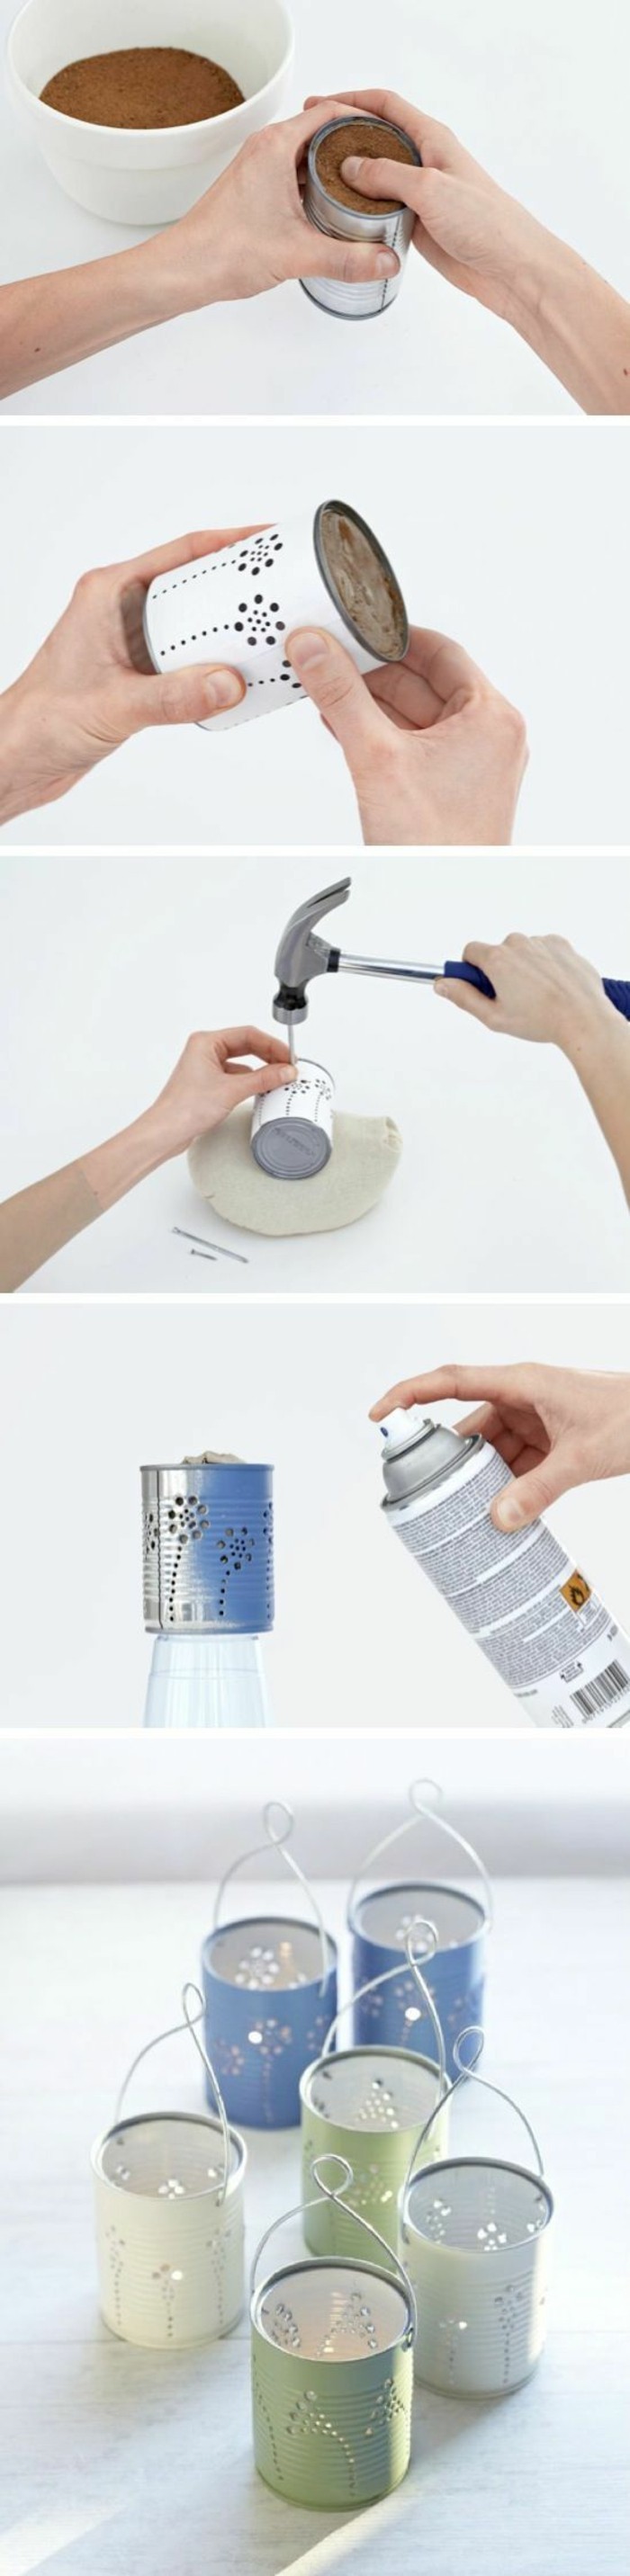 étapes à suivre pour réaliser mini lanterne en canette, idée que faire avec une boîte de conserve, diy lanterne en boîte aluminium 